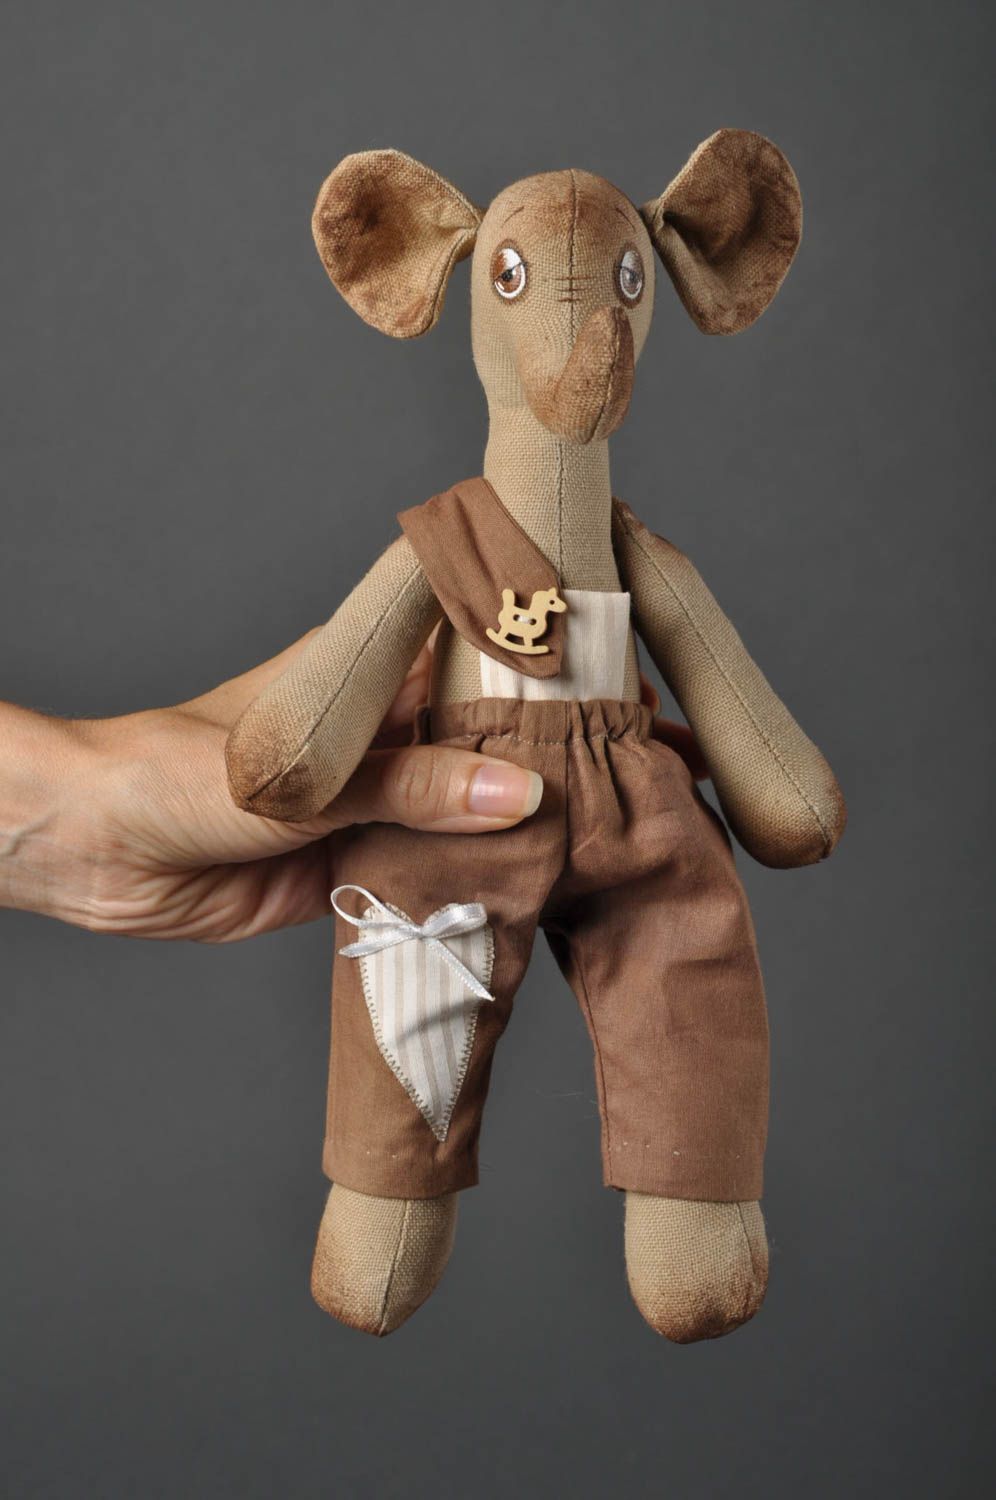 Игрушка слоник ручной работы детская игрушка расписанная акрилом мягкая игрушка фото 3